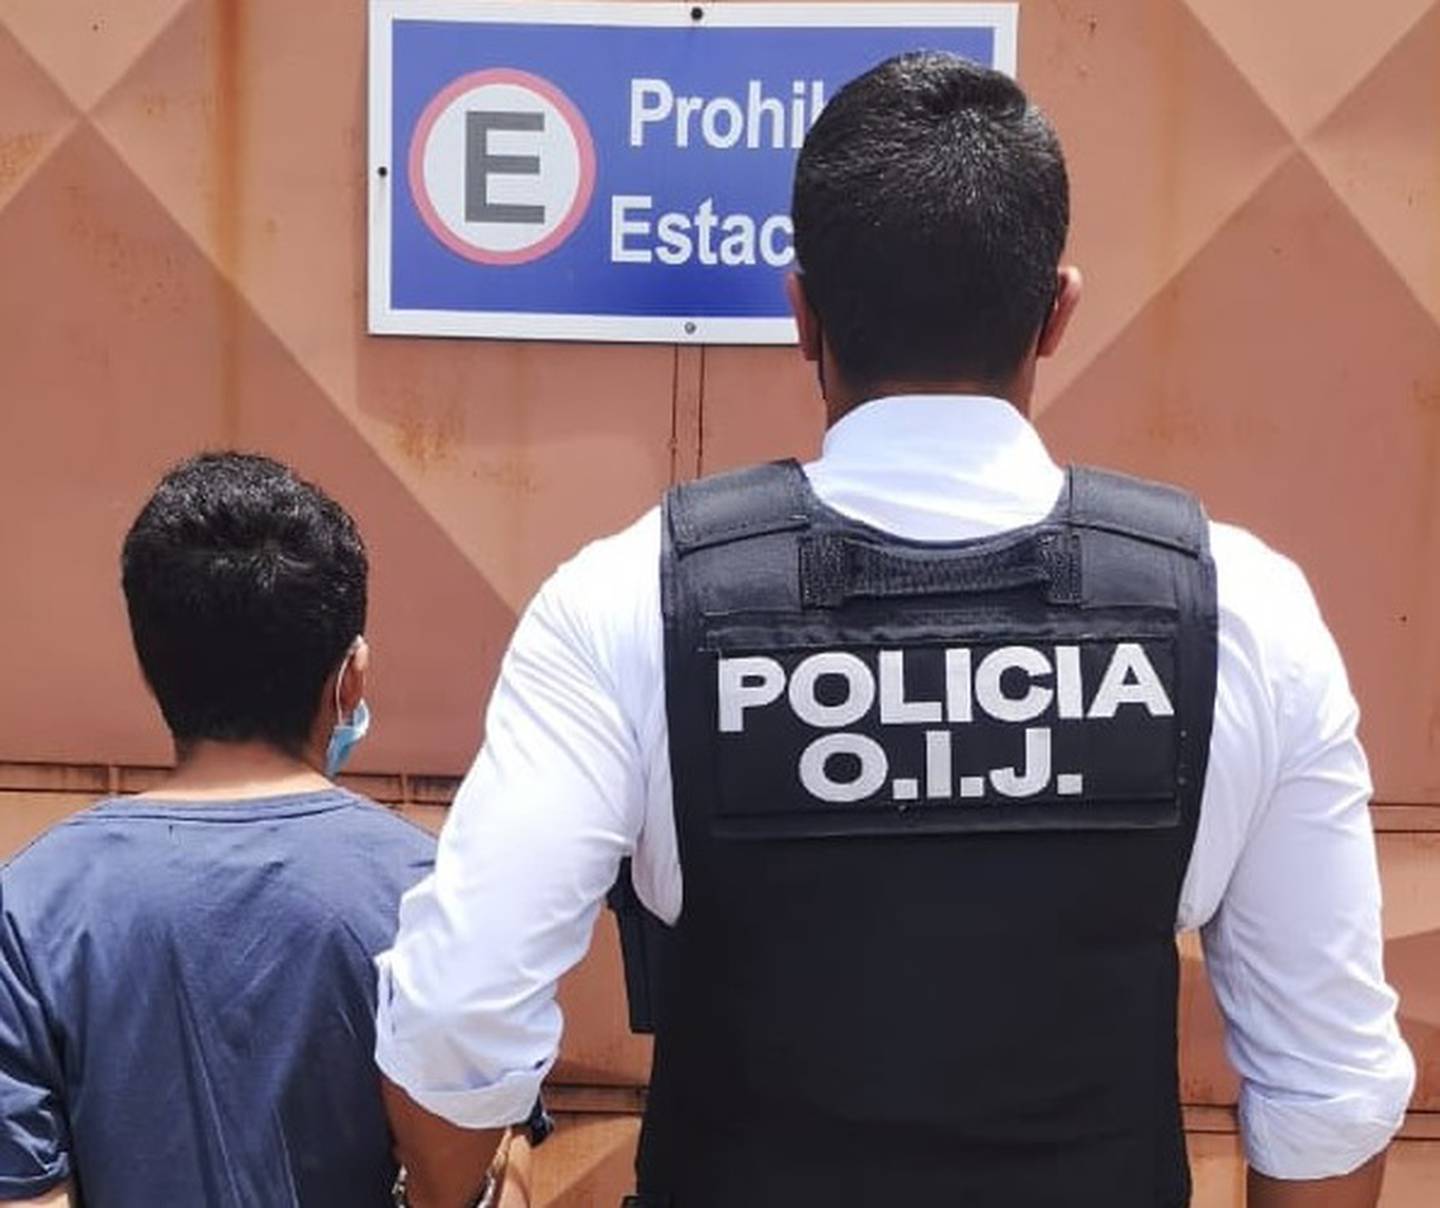 Luego de ser informados sobre el paradero del joven sospechoso de los disparos, se procedió a su captura en el sector fronterizo con Panamá. Foto: Cortesía OIJ.